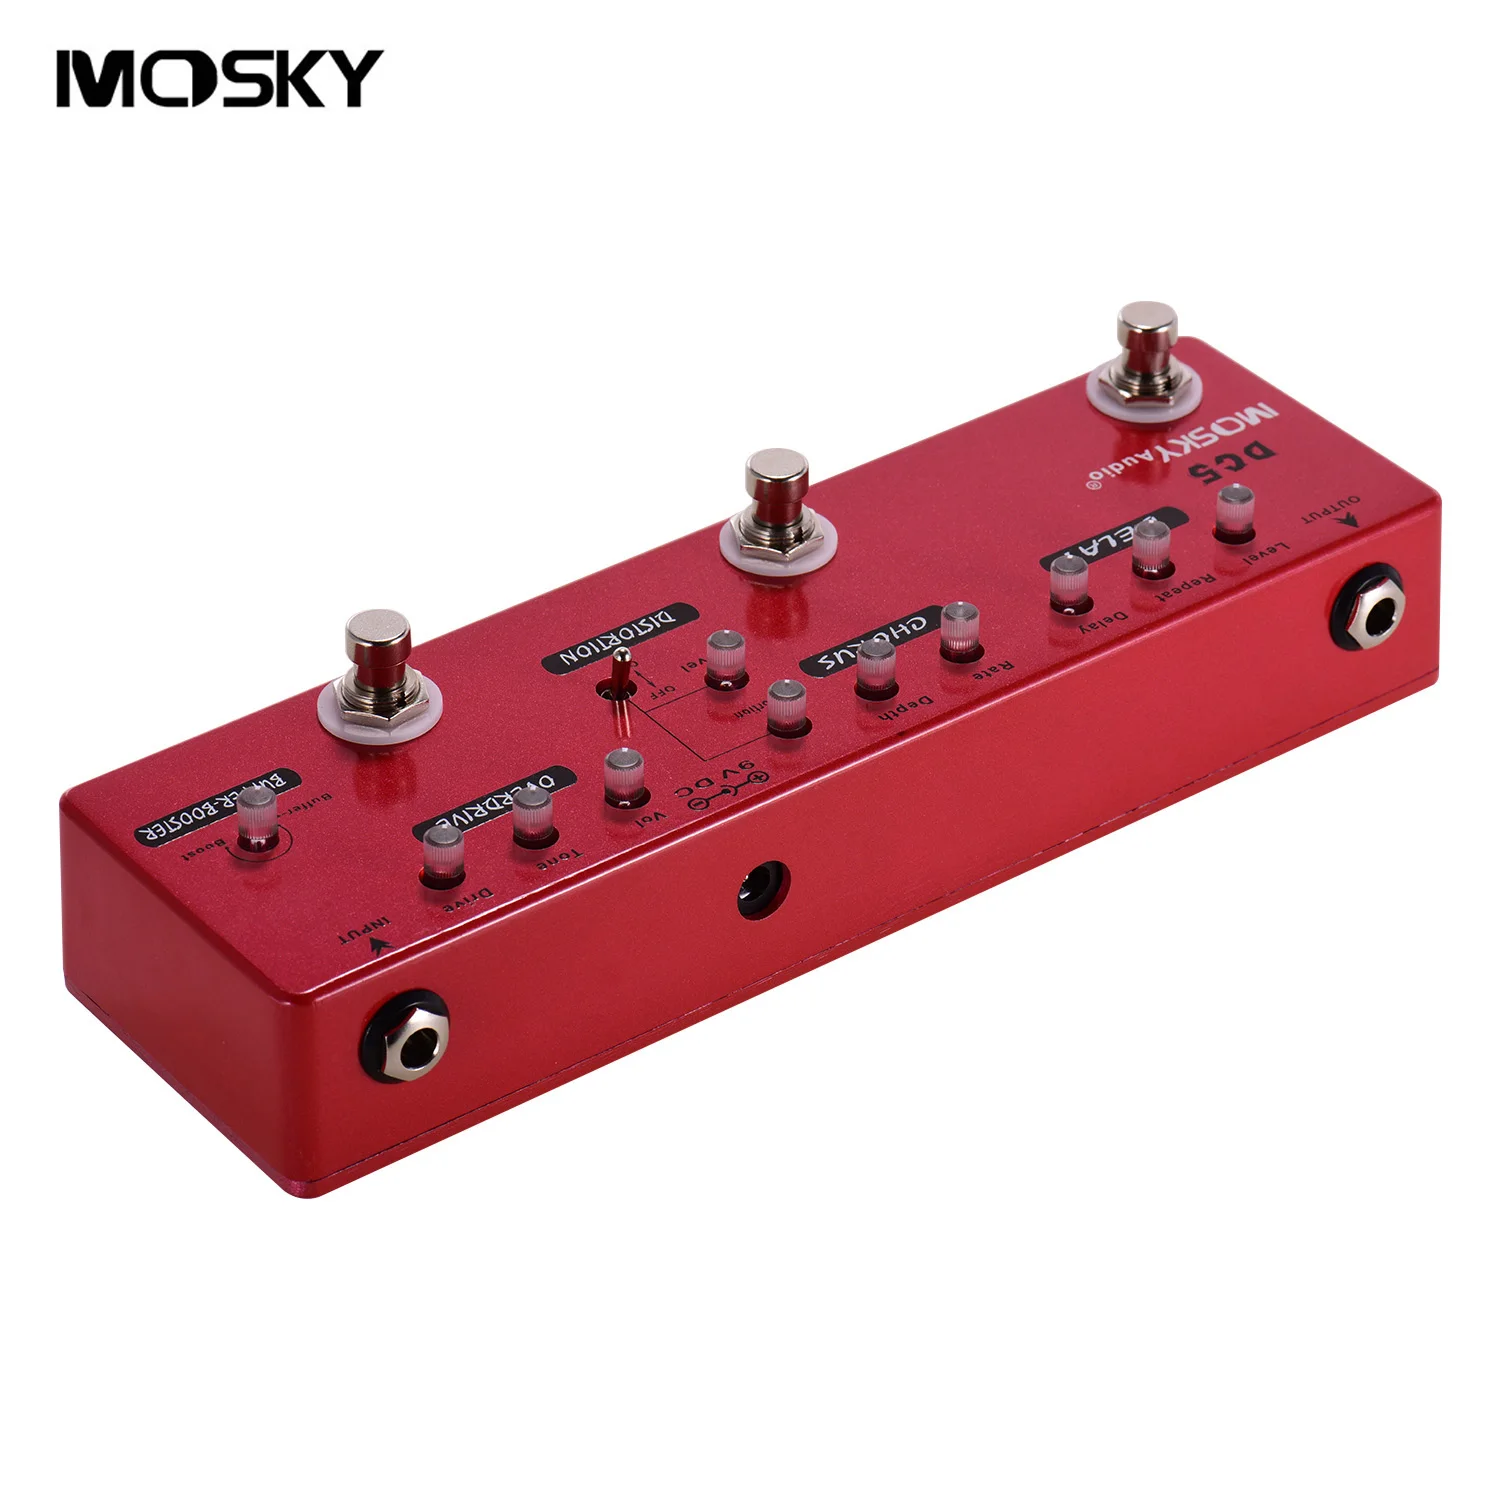 MOSKY DC5 6-în-1 Chitara Multi-Efecte Pedala Full Metal Shell cu True Bypass întârziere efect chitara pedala de chitara accesorii